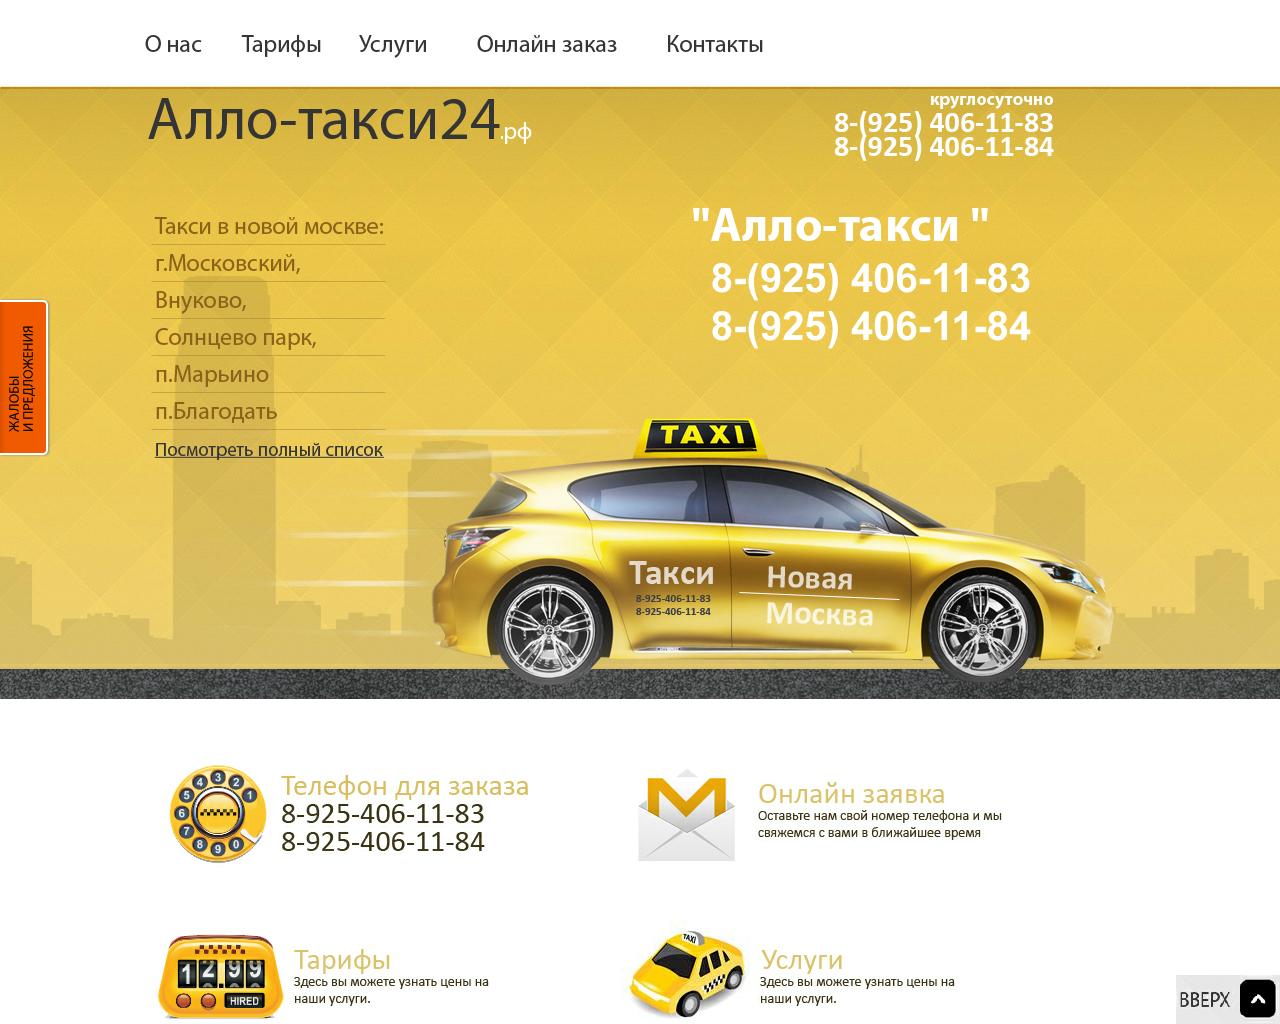 Изображение сайта алло-такси24.рф в разрешении 1280x1024